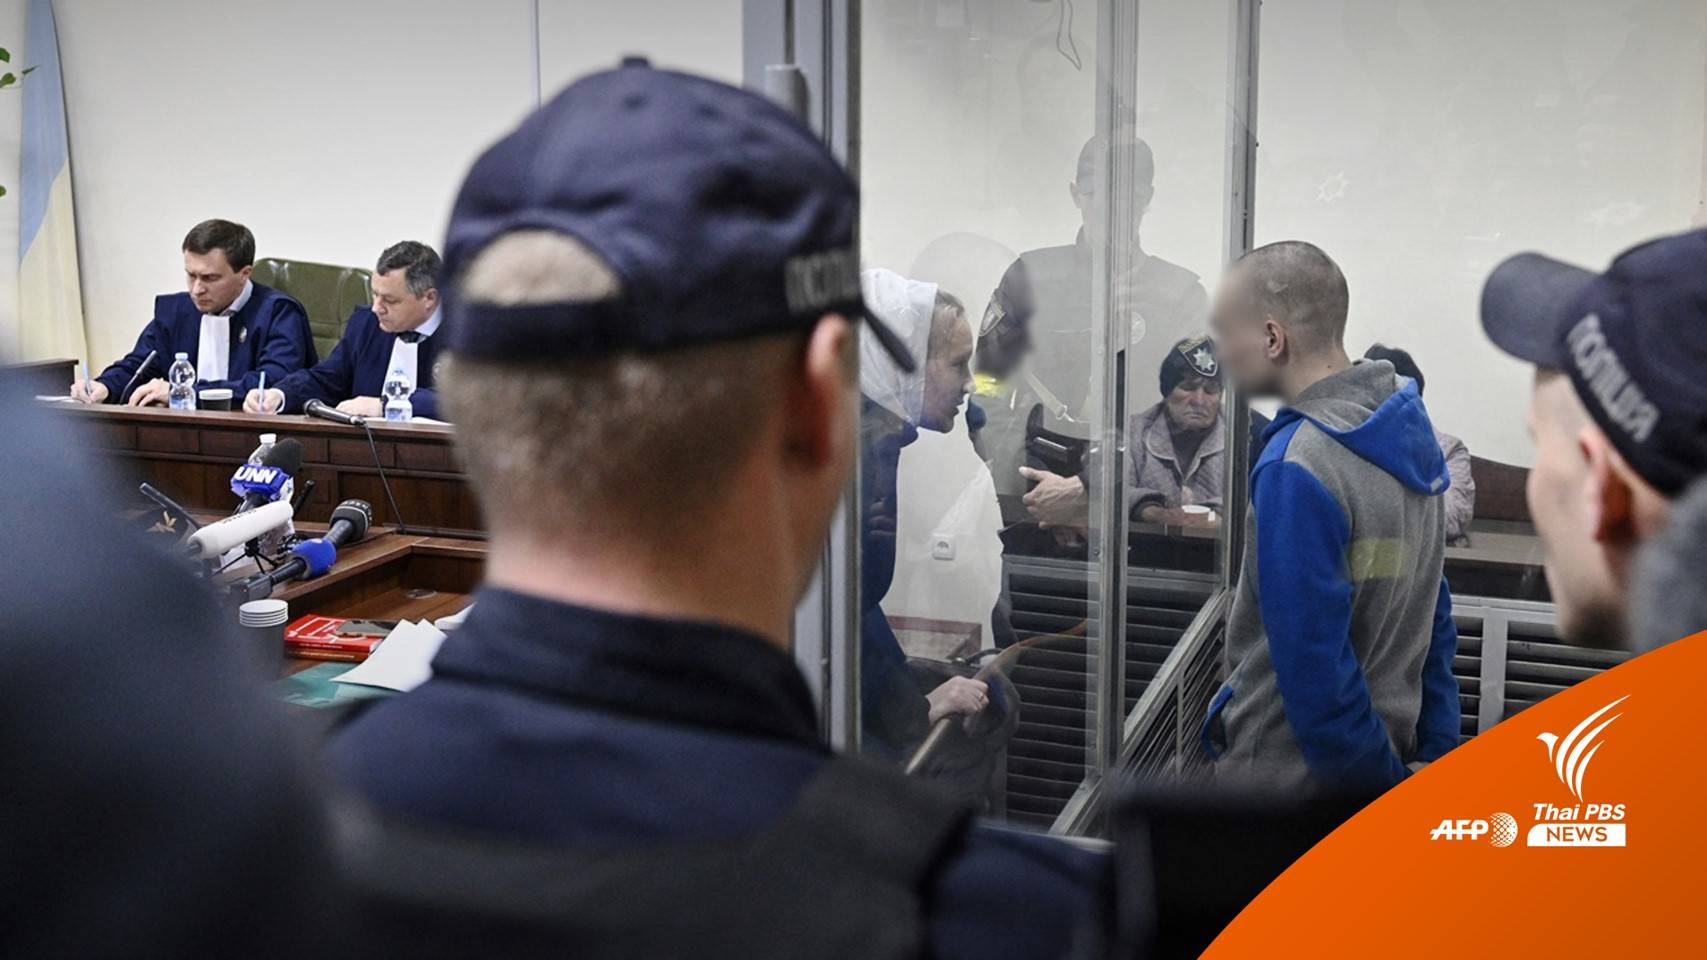 ศาลยูเครนพิจารณาโทษ "ทหารรัสเซีย" ยิงพลเรือนเสียชีวิต